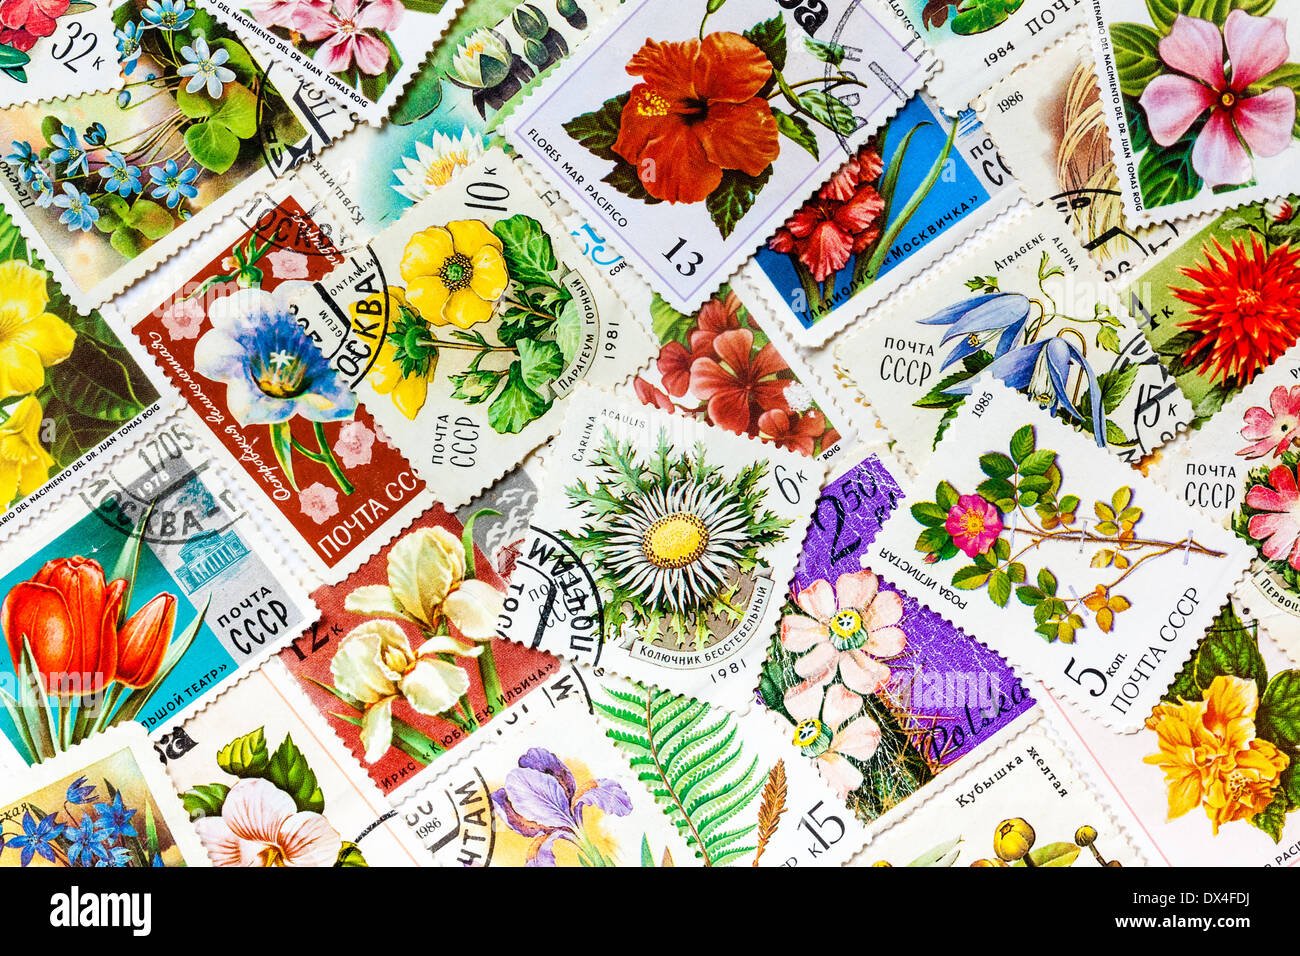 Moskau, Russland – 8. Januar 2014: Briefmarken gedruckt in der UdSSR, vereint durch ein Thema - "Blumen", arrangiert Hintergrund Stockfoto